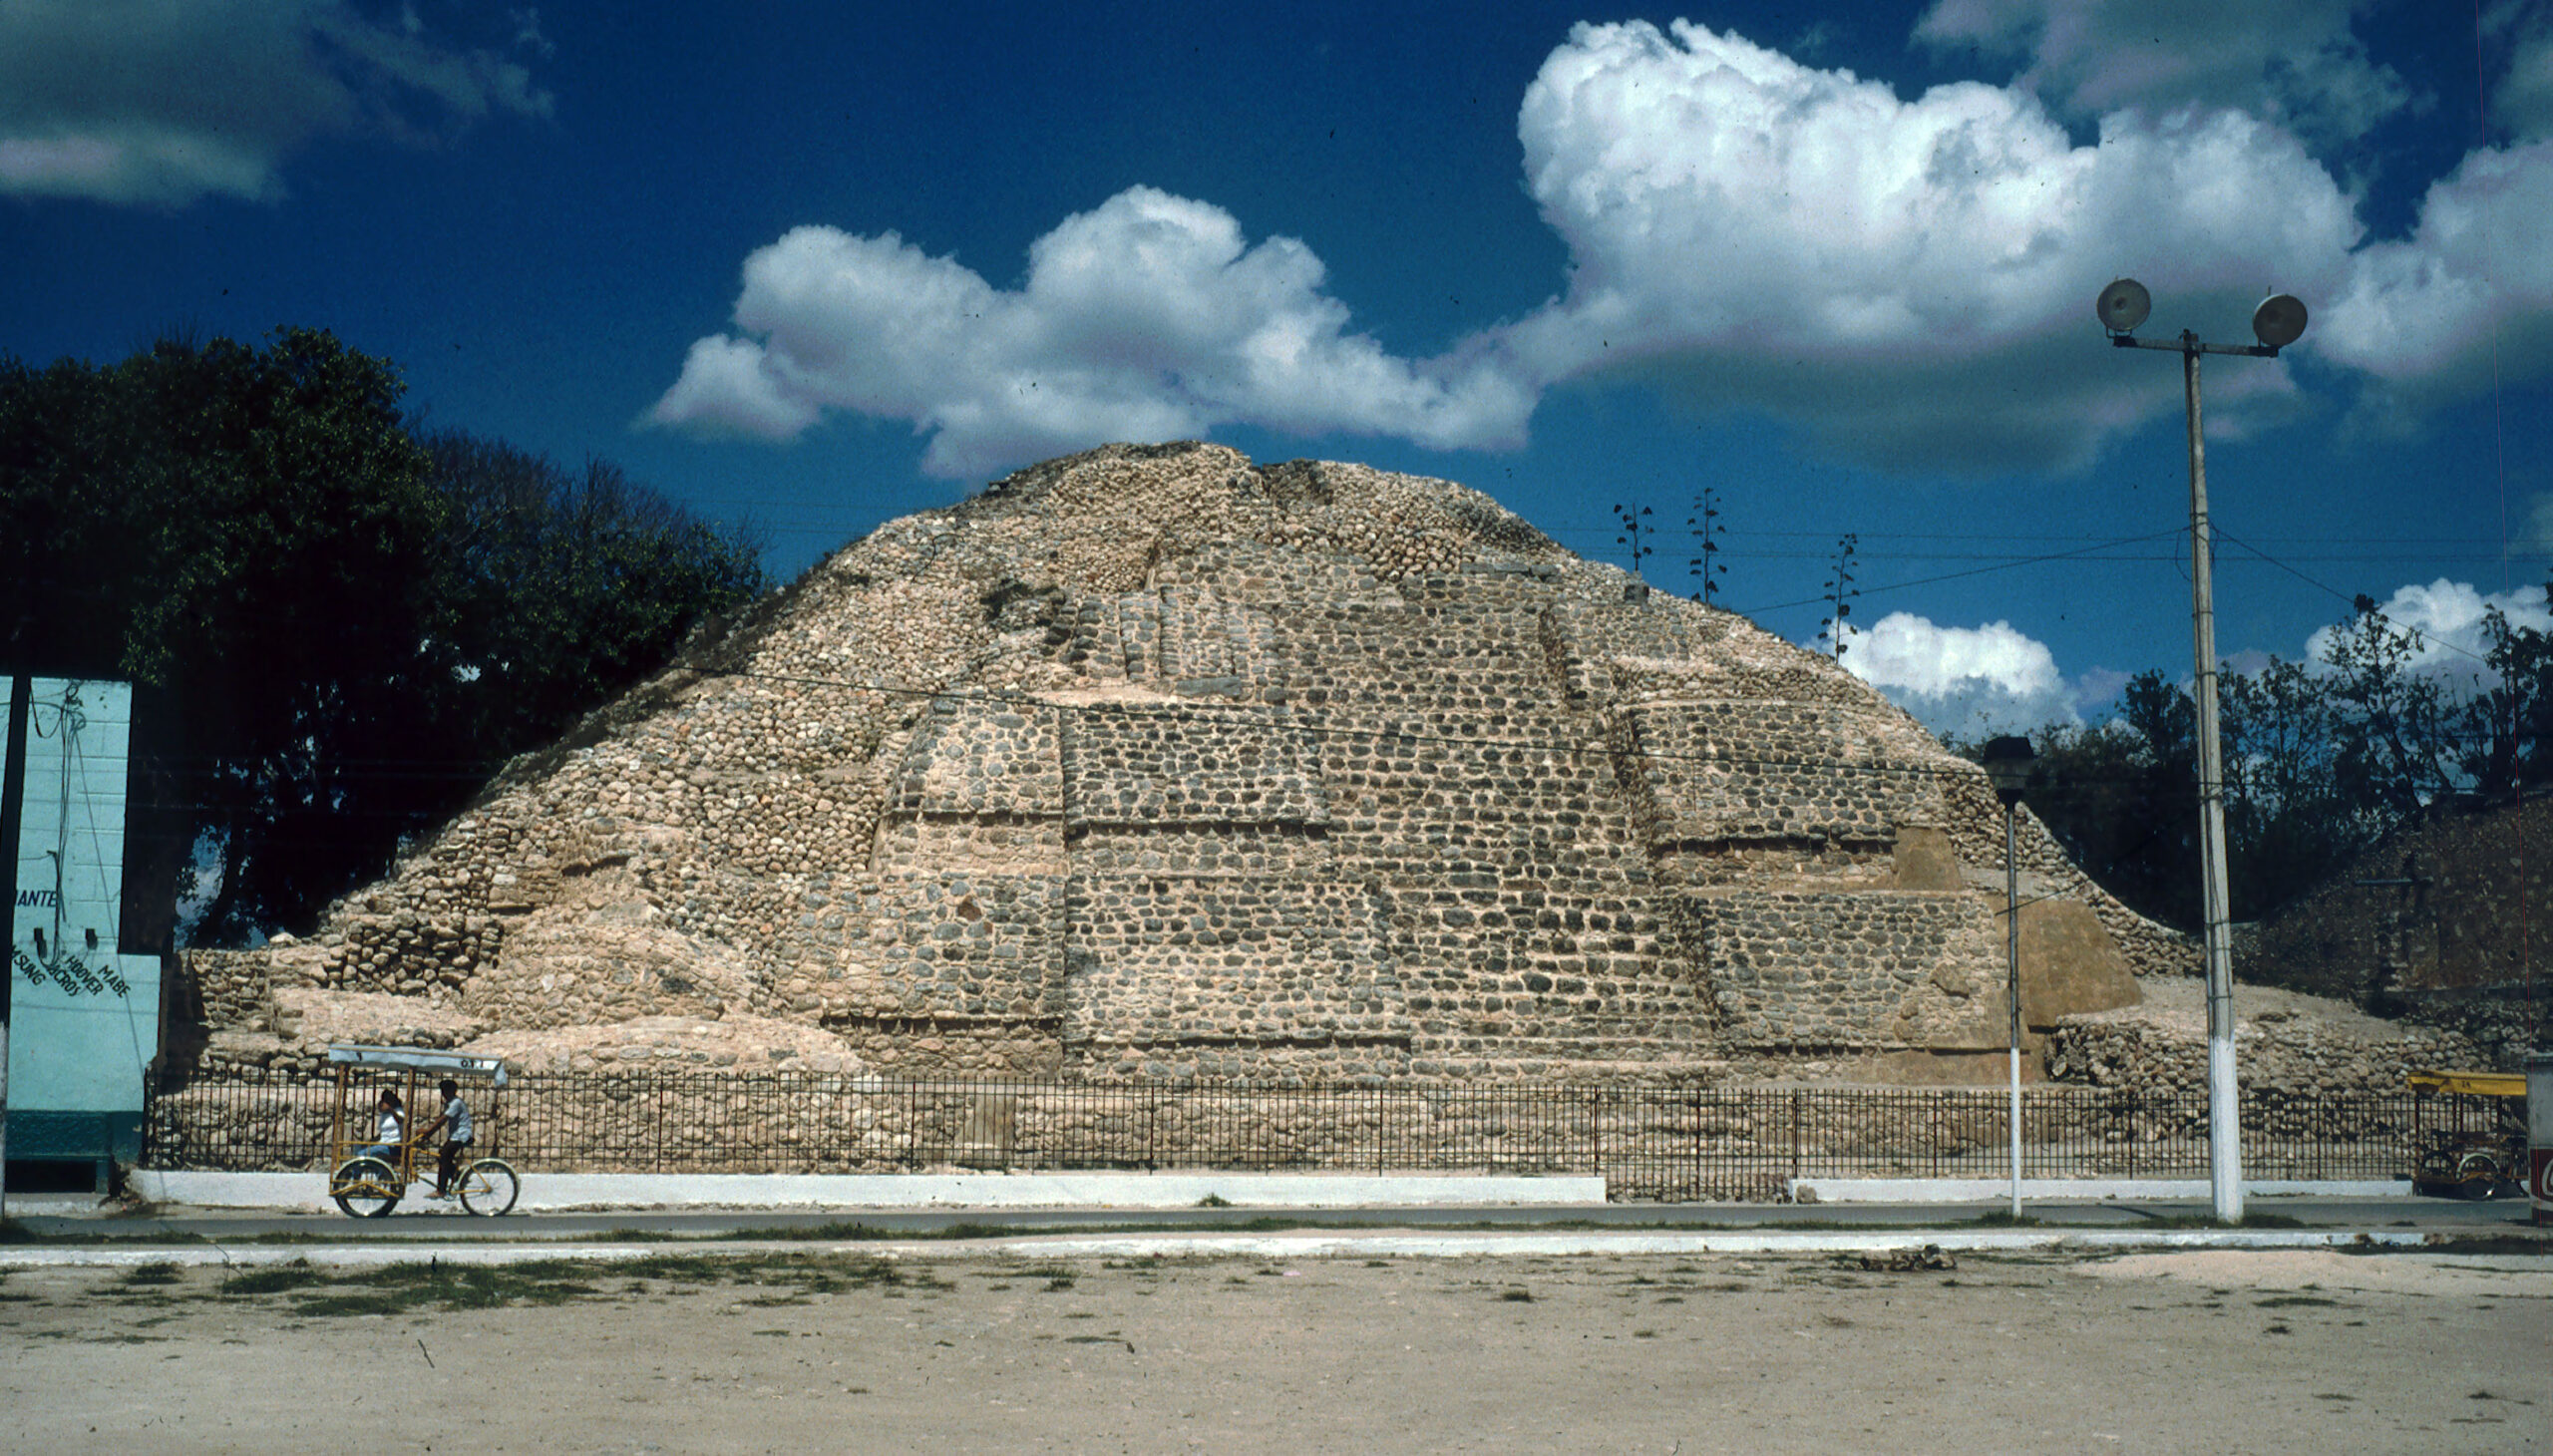 Acancéh: Descubre la fascinante zona arqueológica de Yucatán La zona arqueológica de Acancéh es una de las zonas arqueológicas más importantes del norte de Yucatán.  https://larevistadelsureste.com